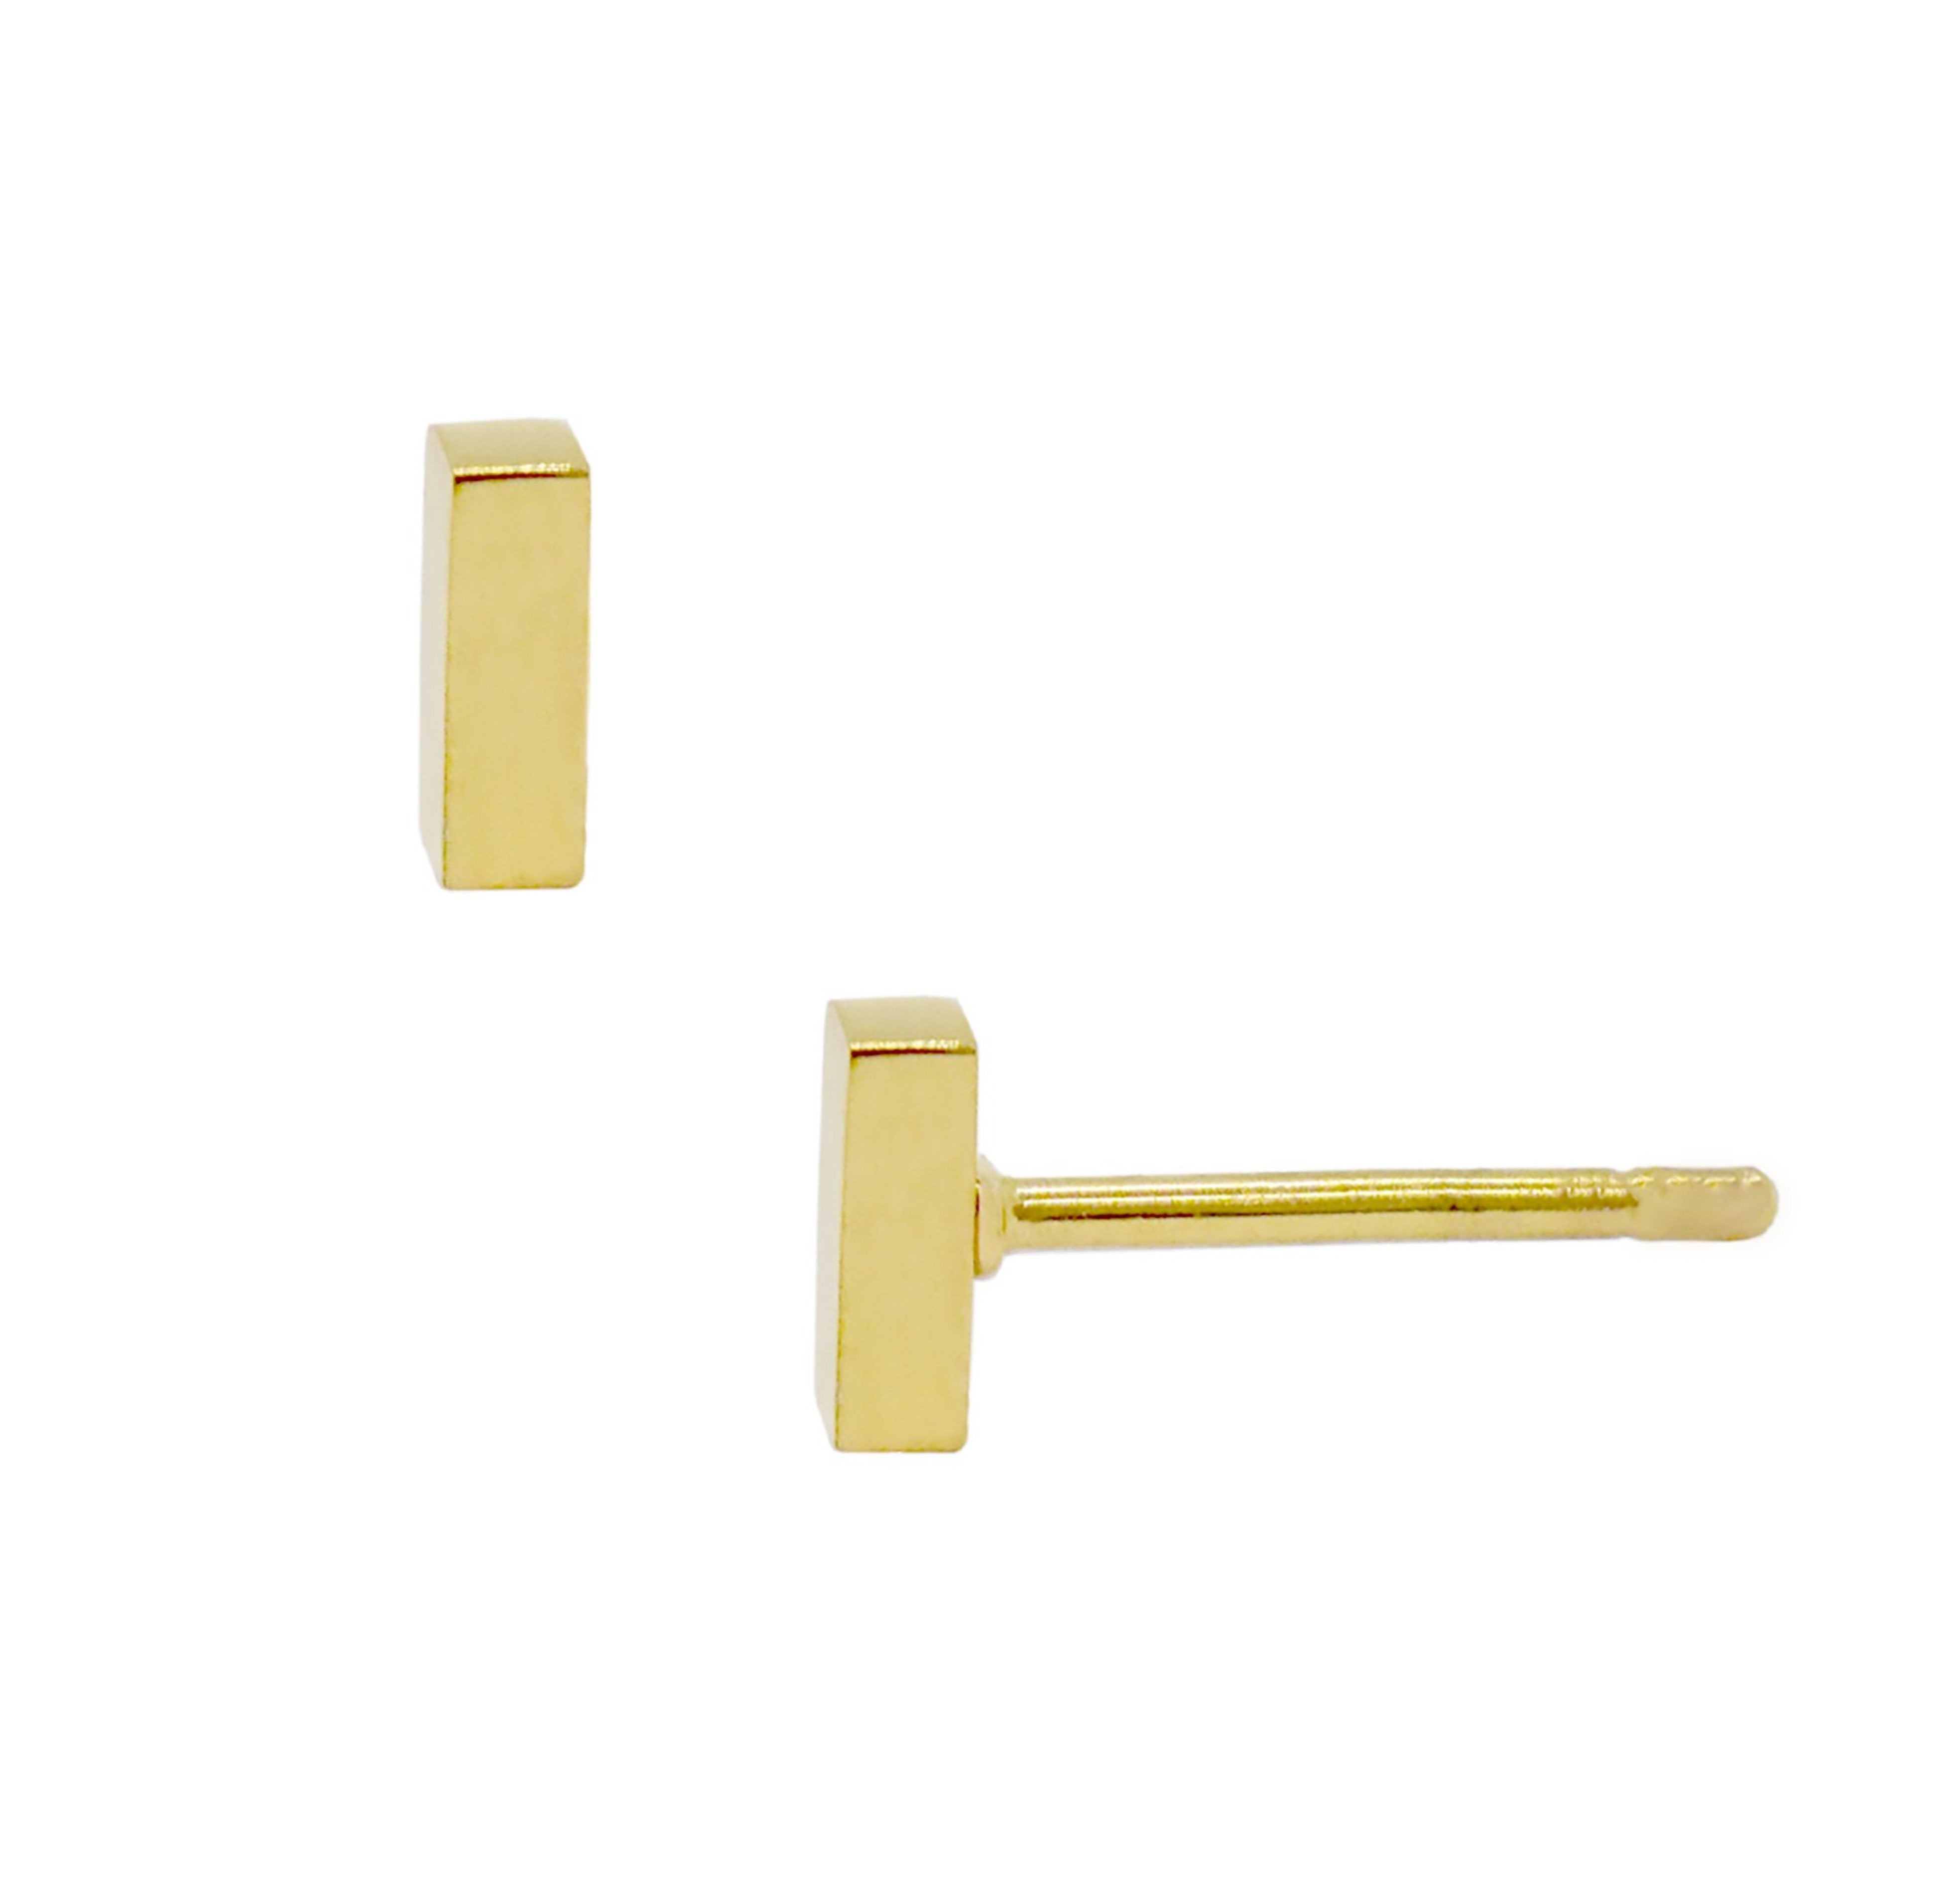 gold bar stud earrings hypoallergenic waterproof gold jewelry